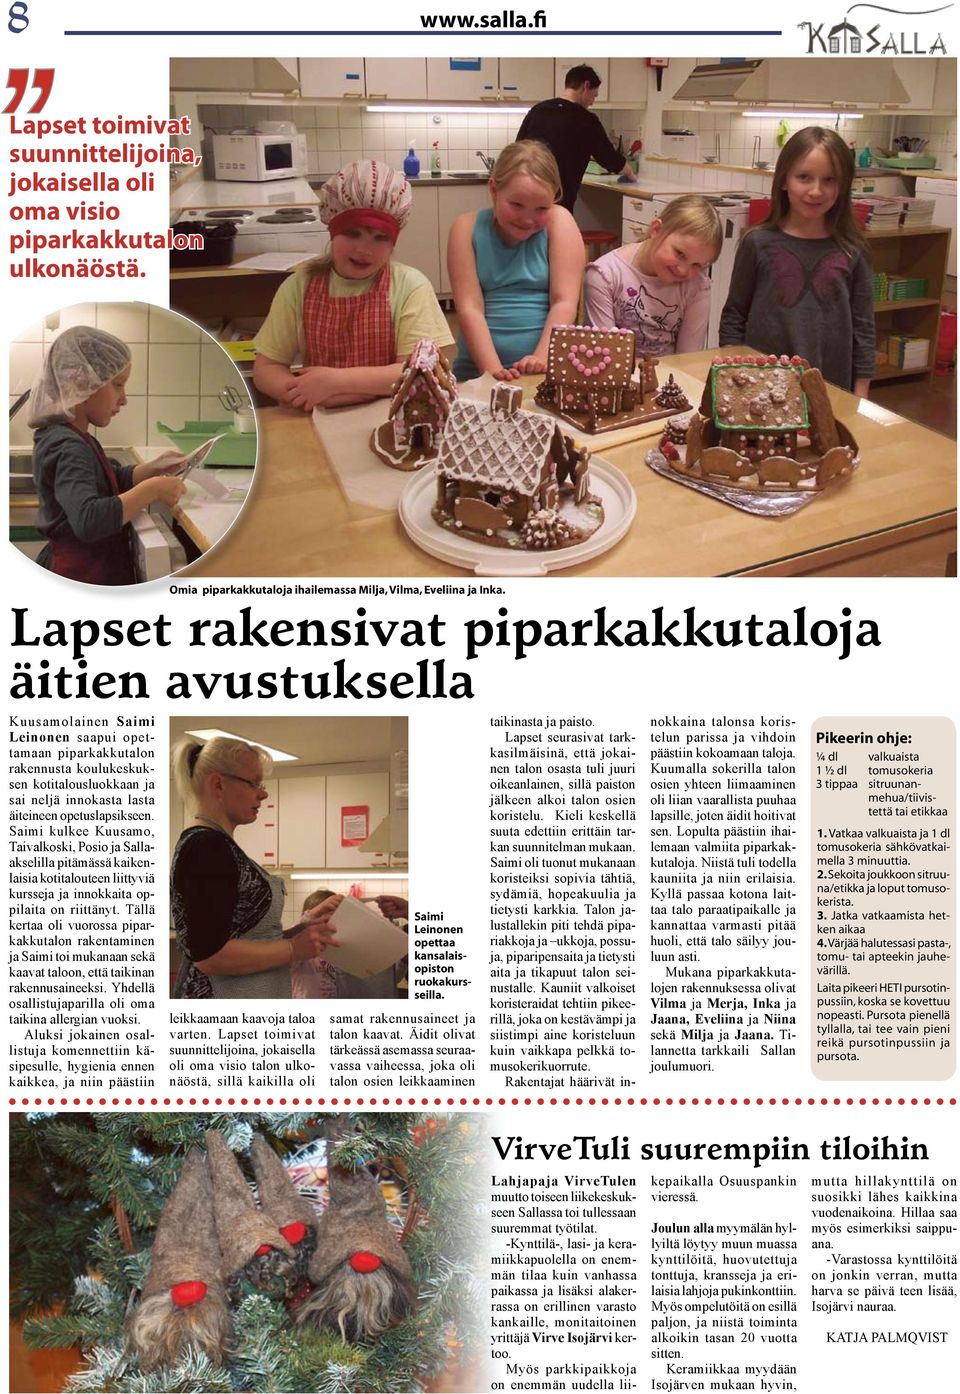 äiteineen opetuslapsikseen. Saimi kulkee Kuusamo, Taivalkoski, Posio ja Sallaakselilla pitämässä kaikenlaisia kotitalouteen liittyviä kursseja ja innokkaita oppilaita on riittänyt.